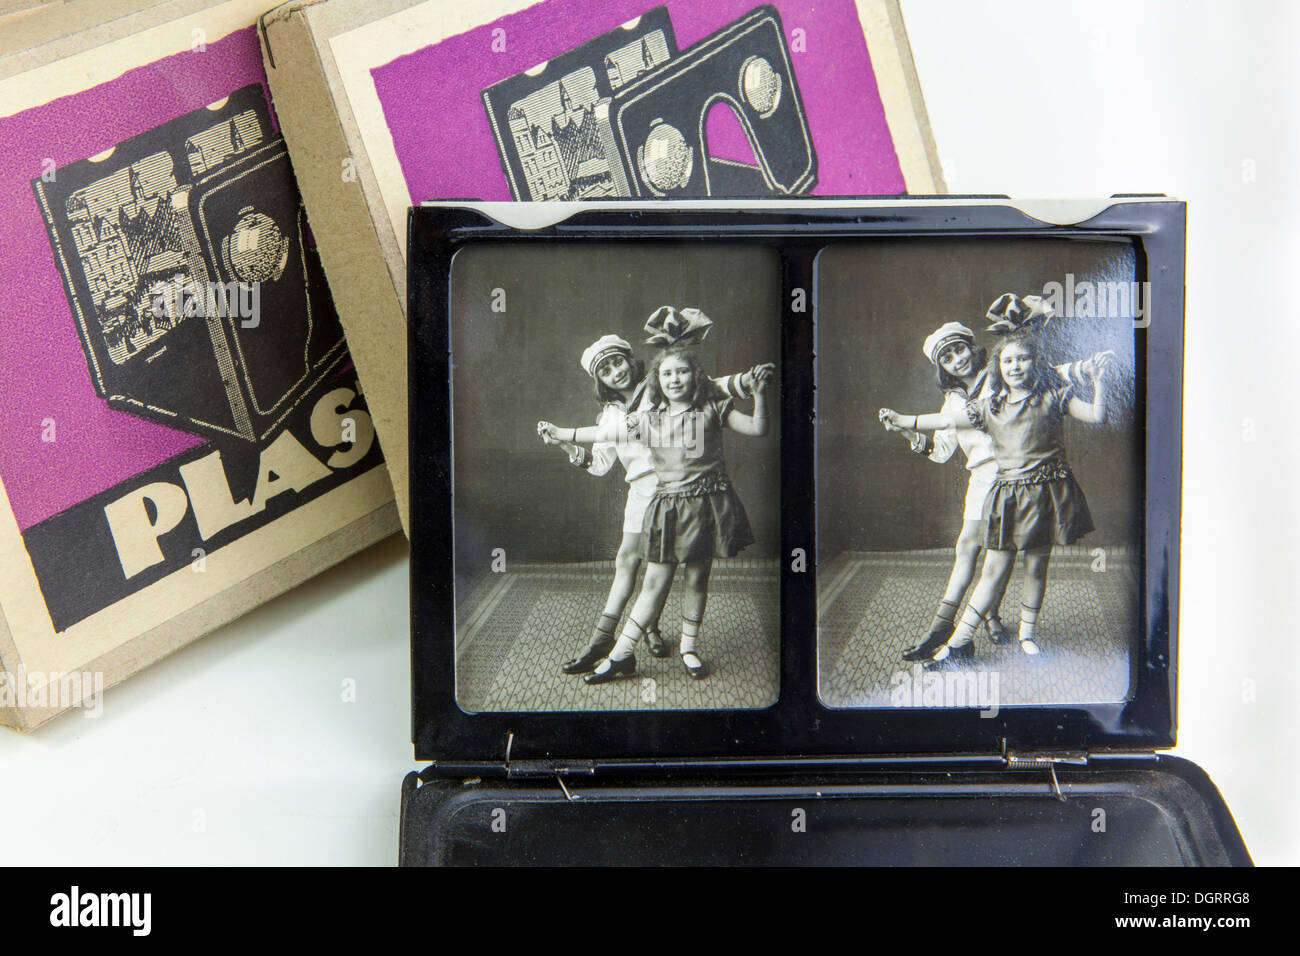 La estereoscopía, fotografías estereoscópicas en 3D, visor de fotos, historia de la fotografía en 3D, en torno a 1920 Foto de stock